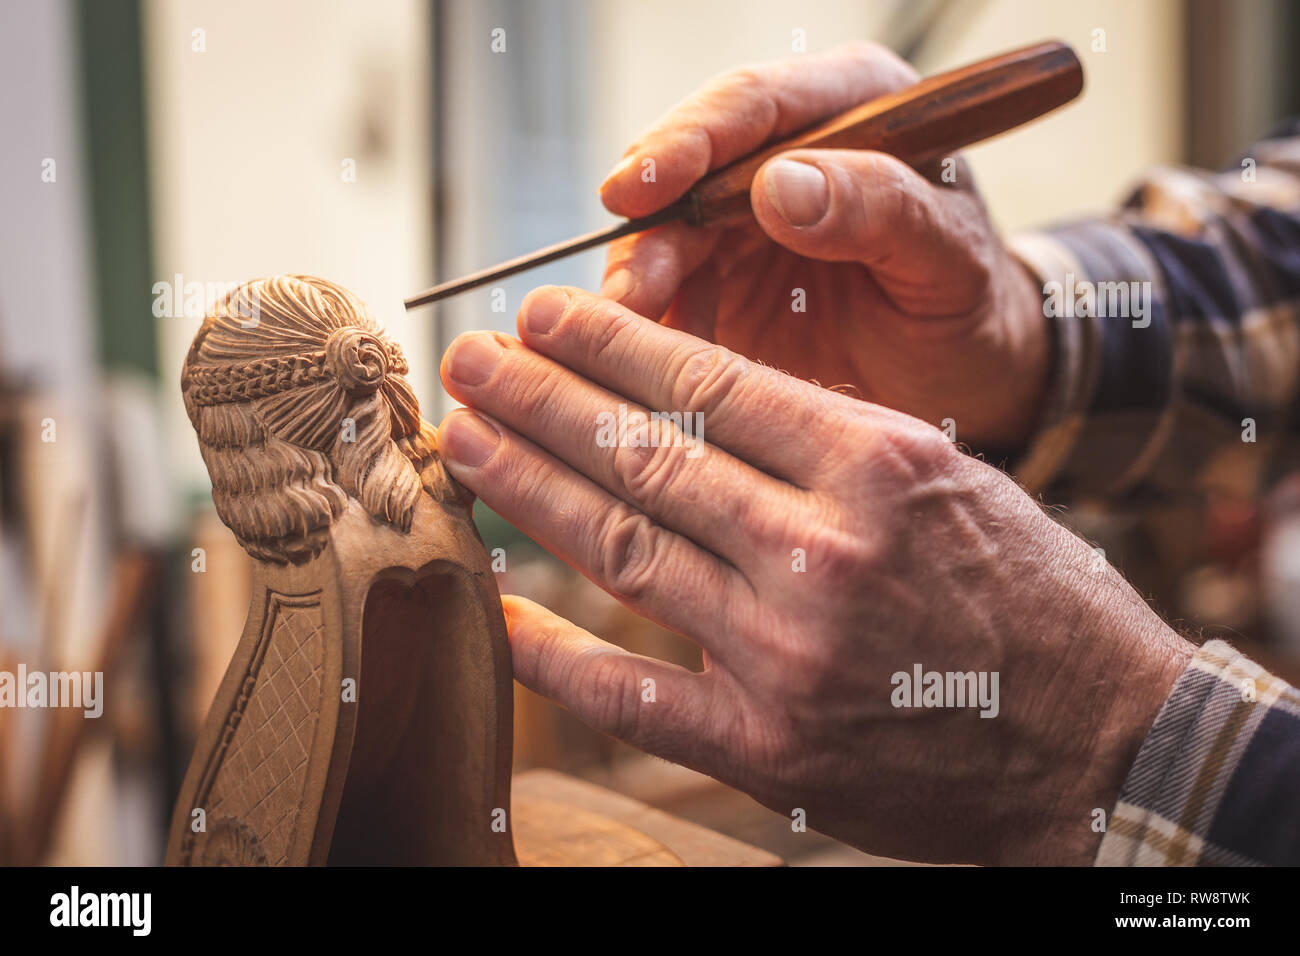 Mains d'un sculpteur sur bois à l'aide d'un outil travaillant sur une petite figure en bois Banque D'Images